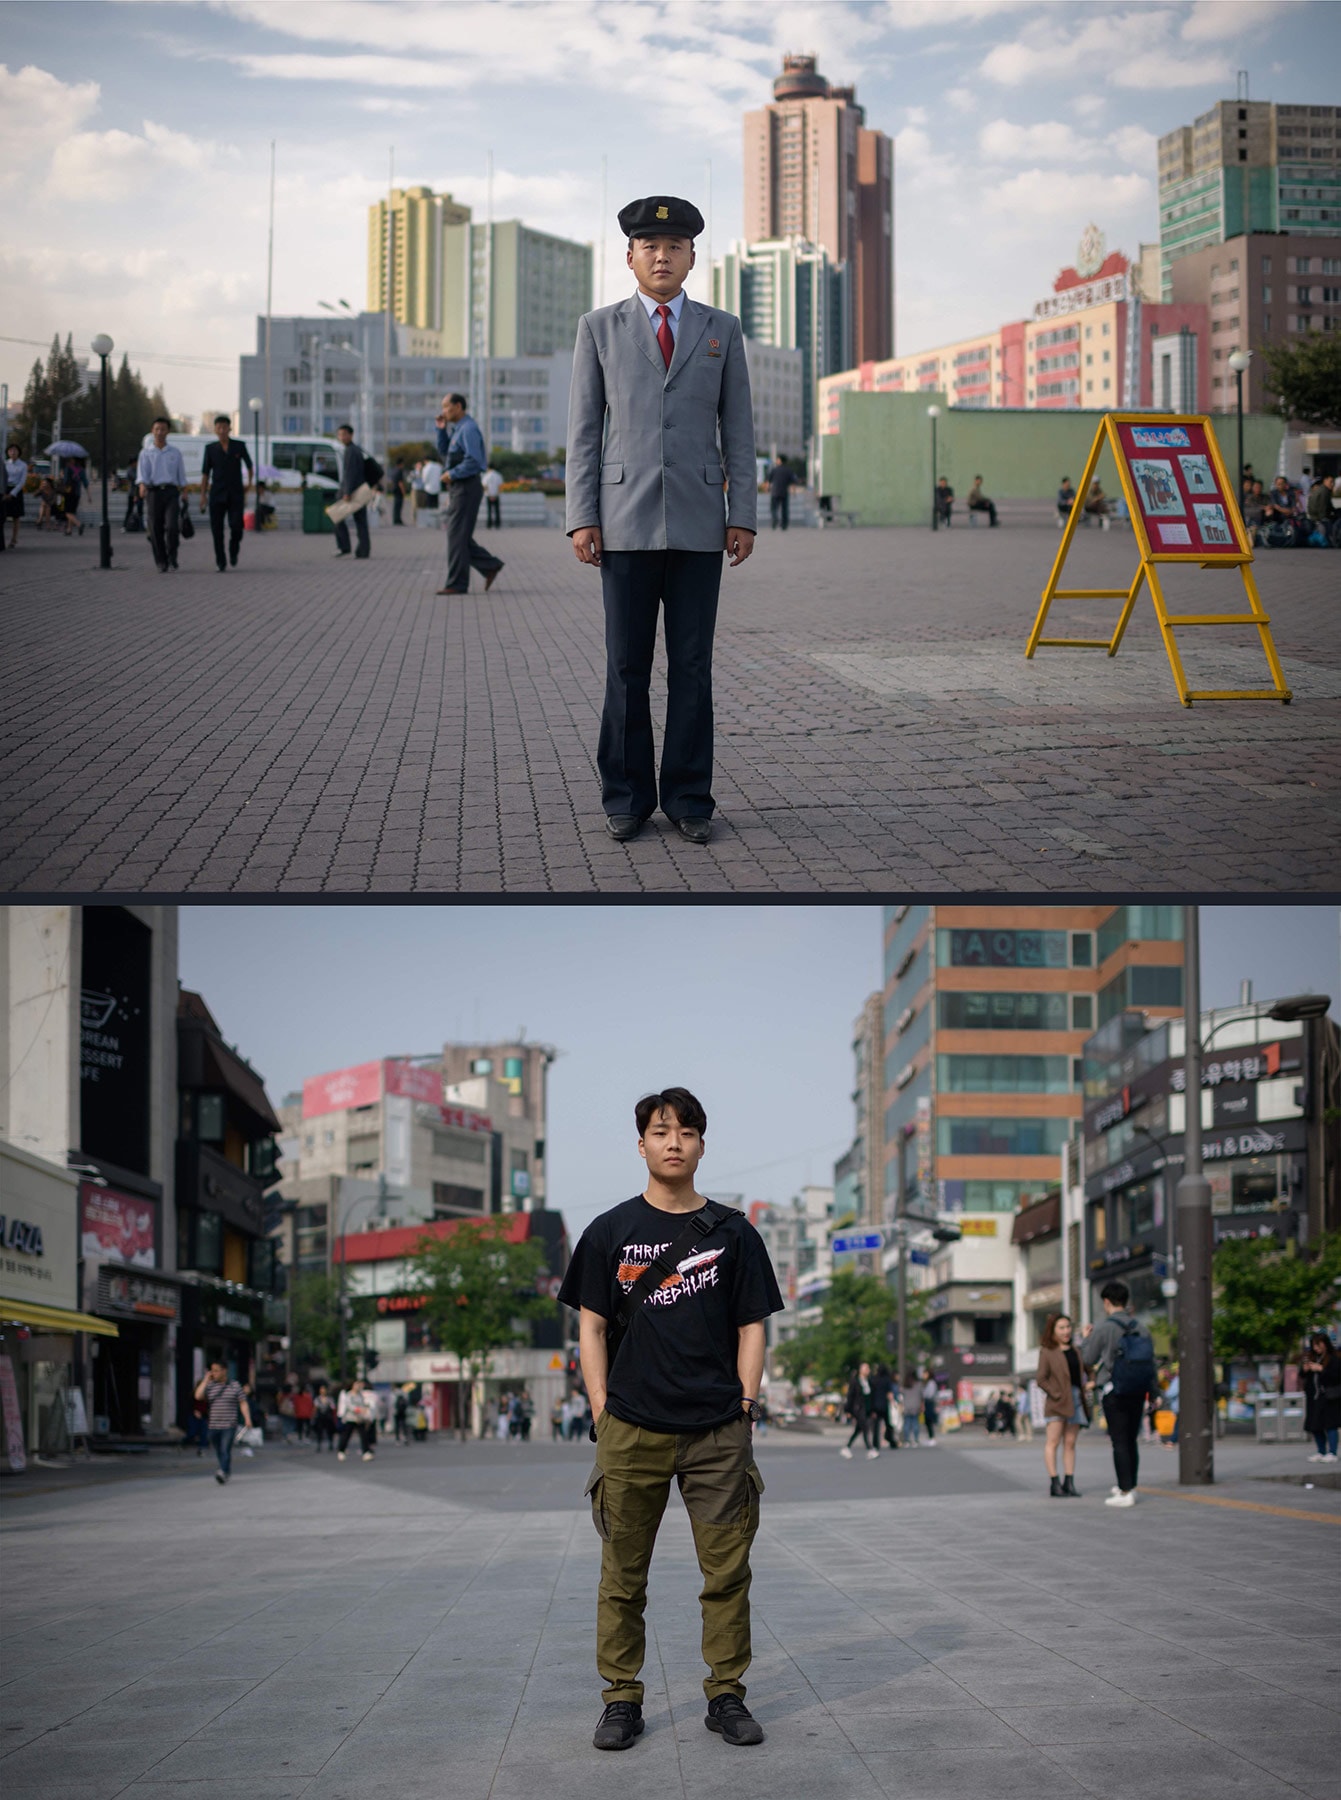 한국 북한 평양 서울 시민 직업 비교 사진